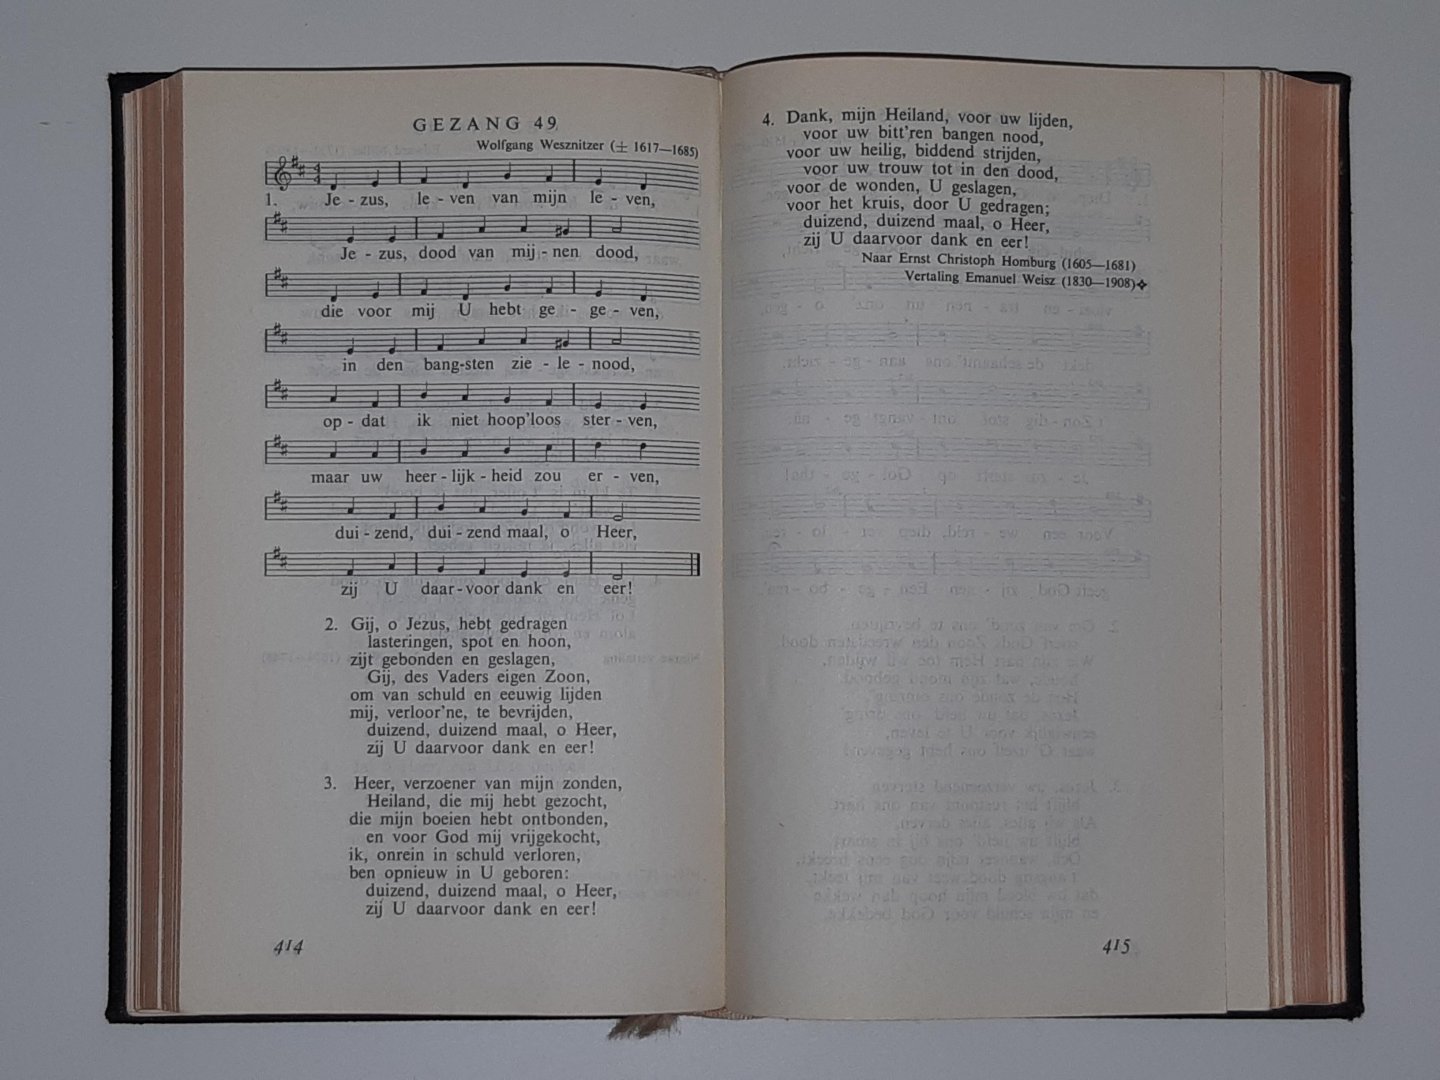 NH BUNDEL 1968 - Psalmen en Gezangen - Psalmen Nieuwe Berijming van de interkerkelijke stichting psalmberijming en Gezangen uit bundel 1938